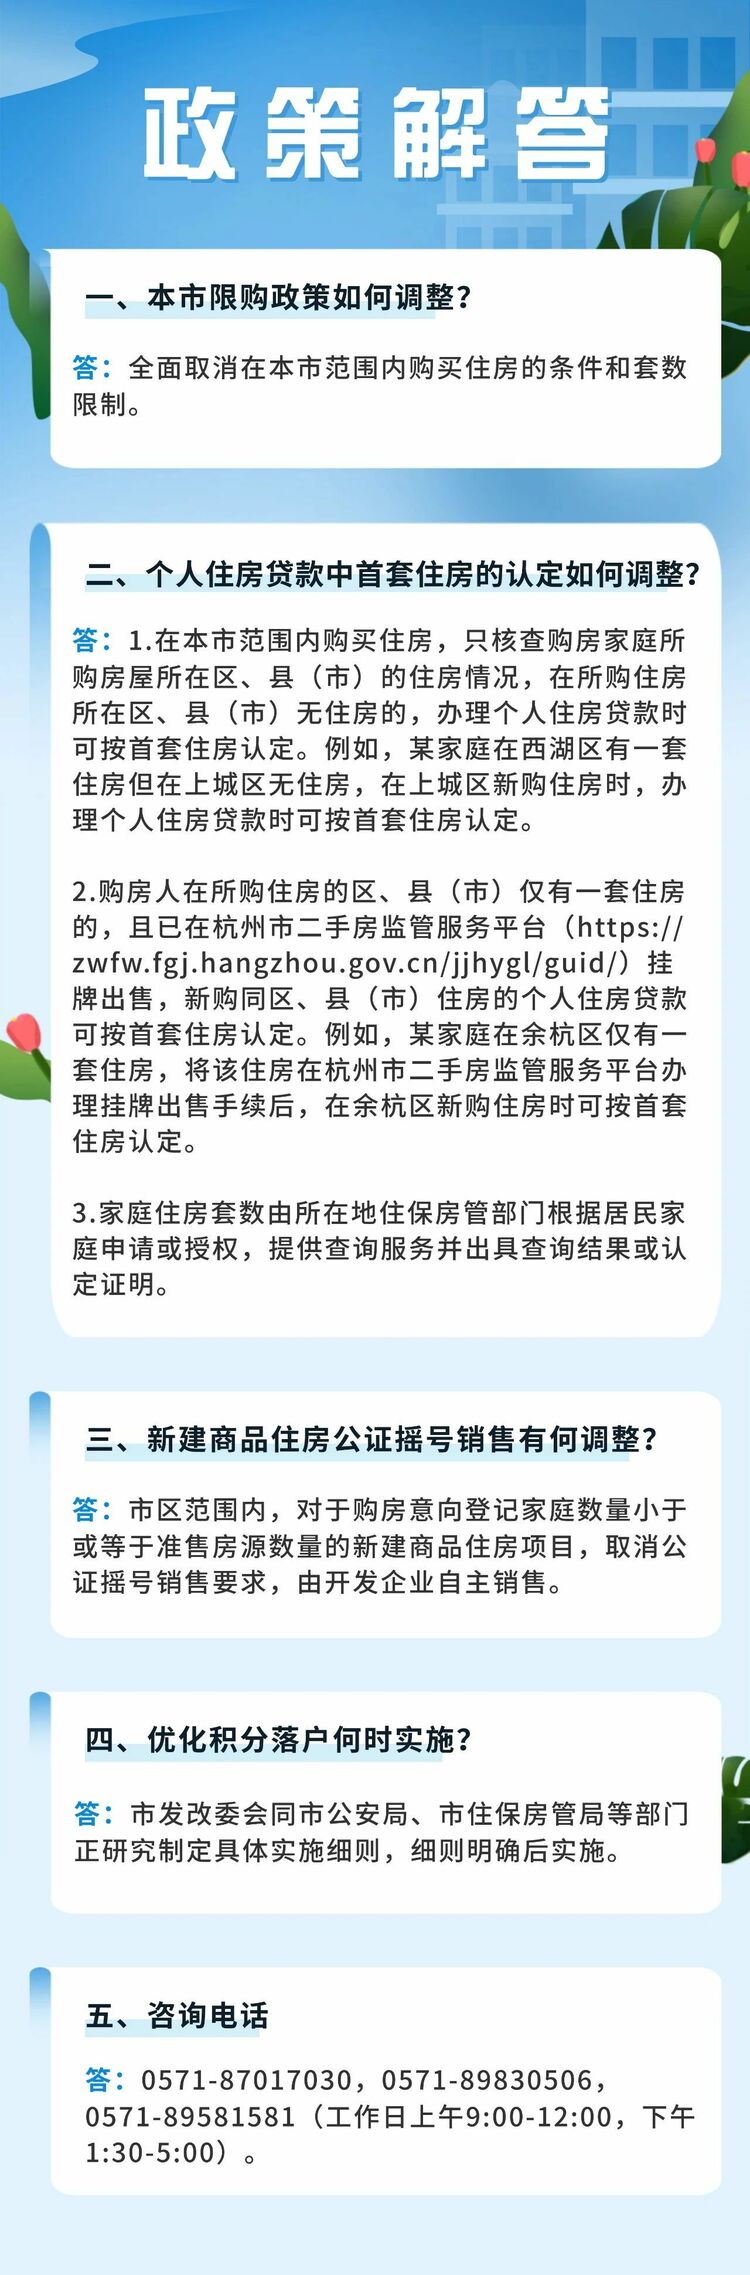 杭州：一共铲除住房限购 购房可申请落户